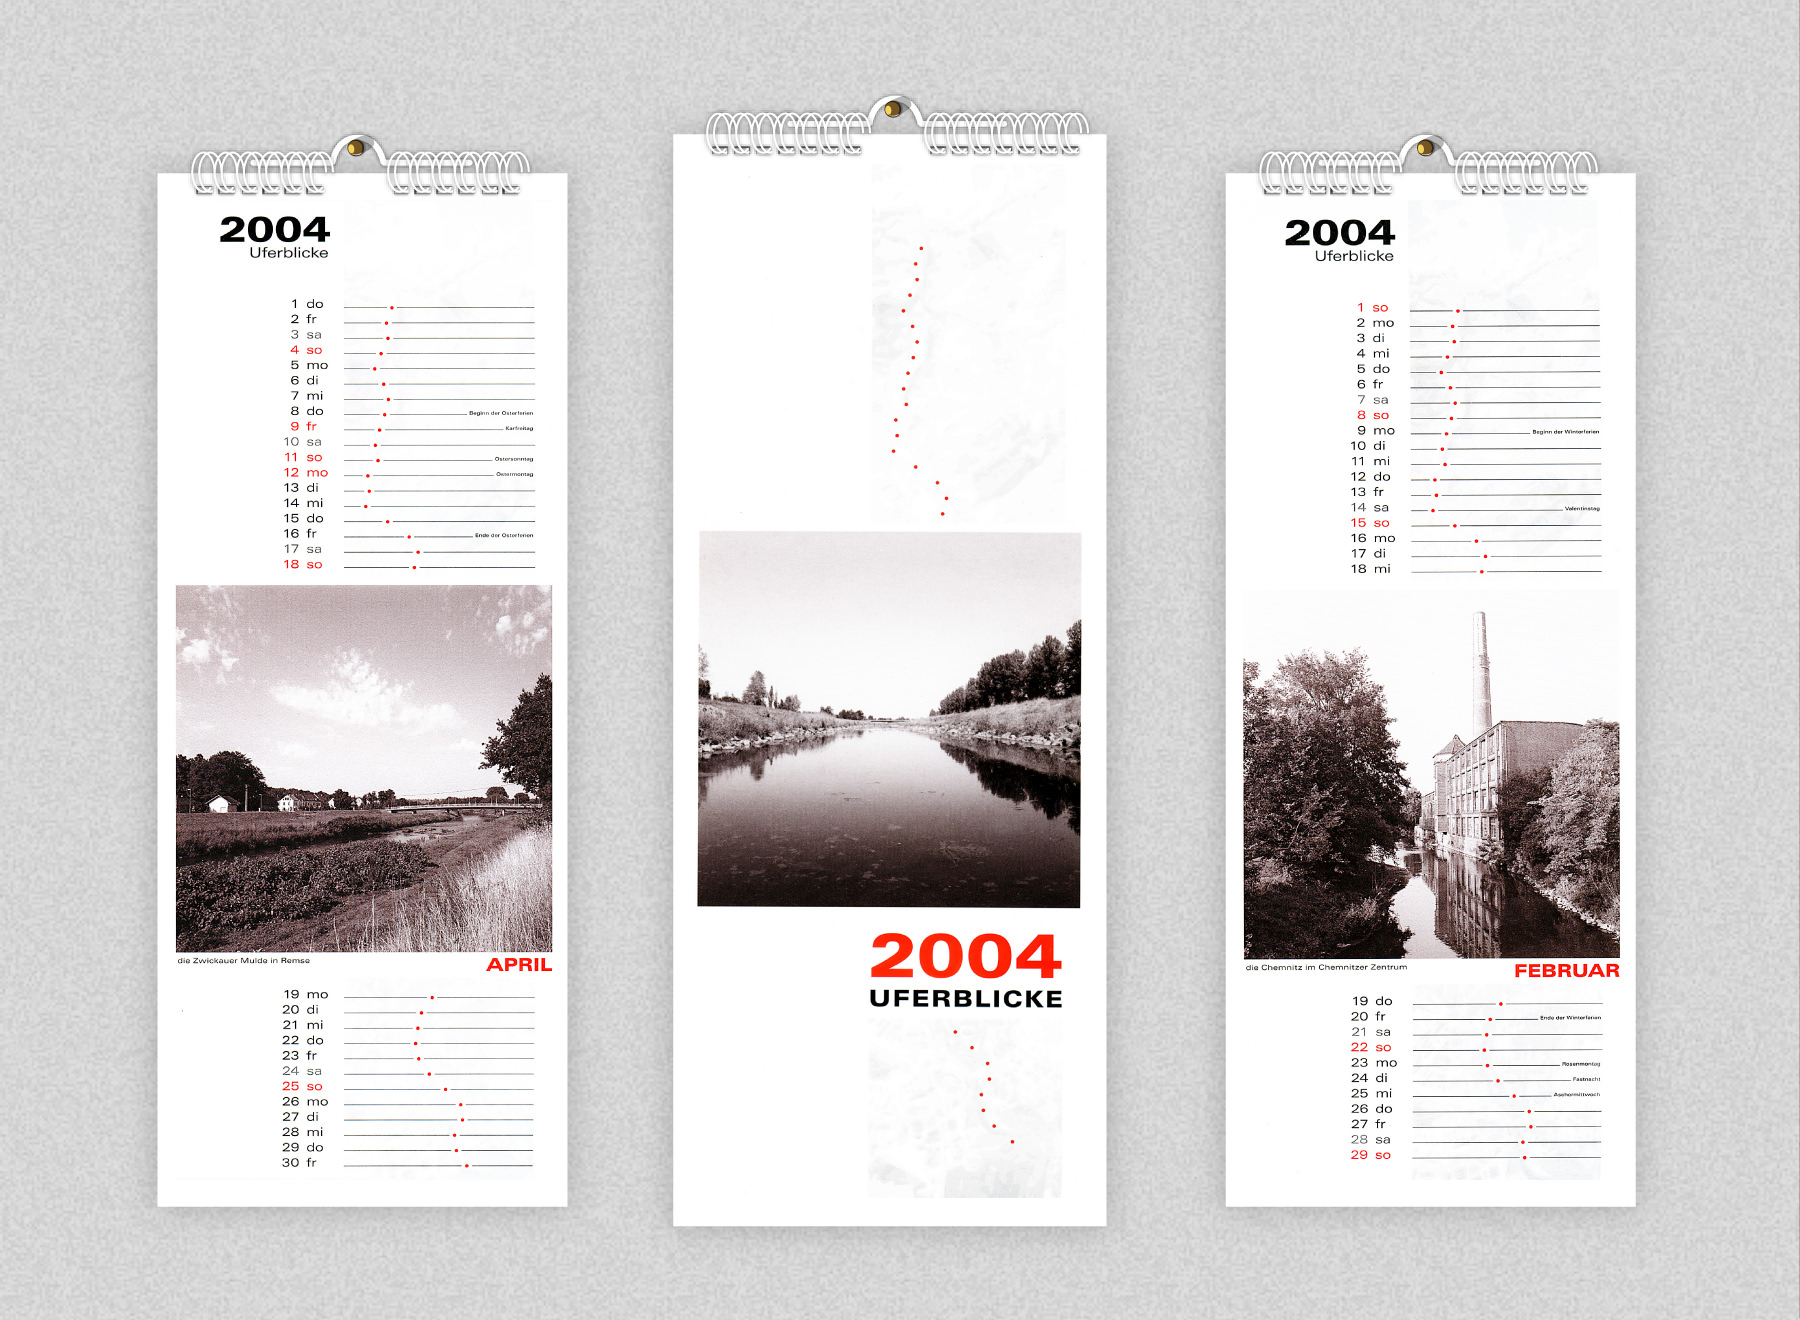 Die Sparkasse Chemnitz beauftragt Artkolchose nach Pitchgewinn mit der Gesamtproduktion Ihres Jahreskalenders 2004